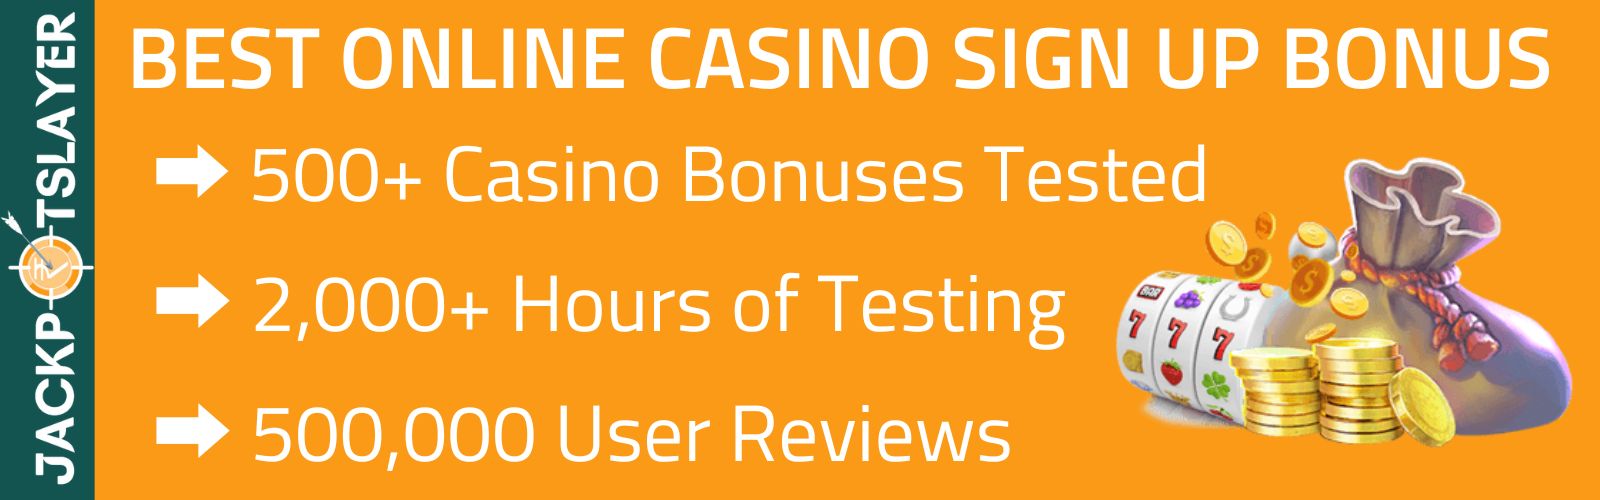 Best Sign Up Bonus Online Casinos India